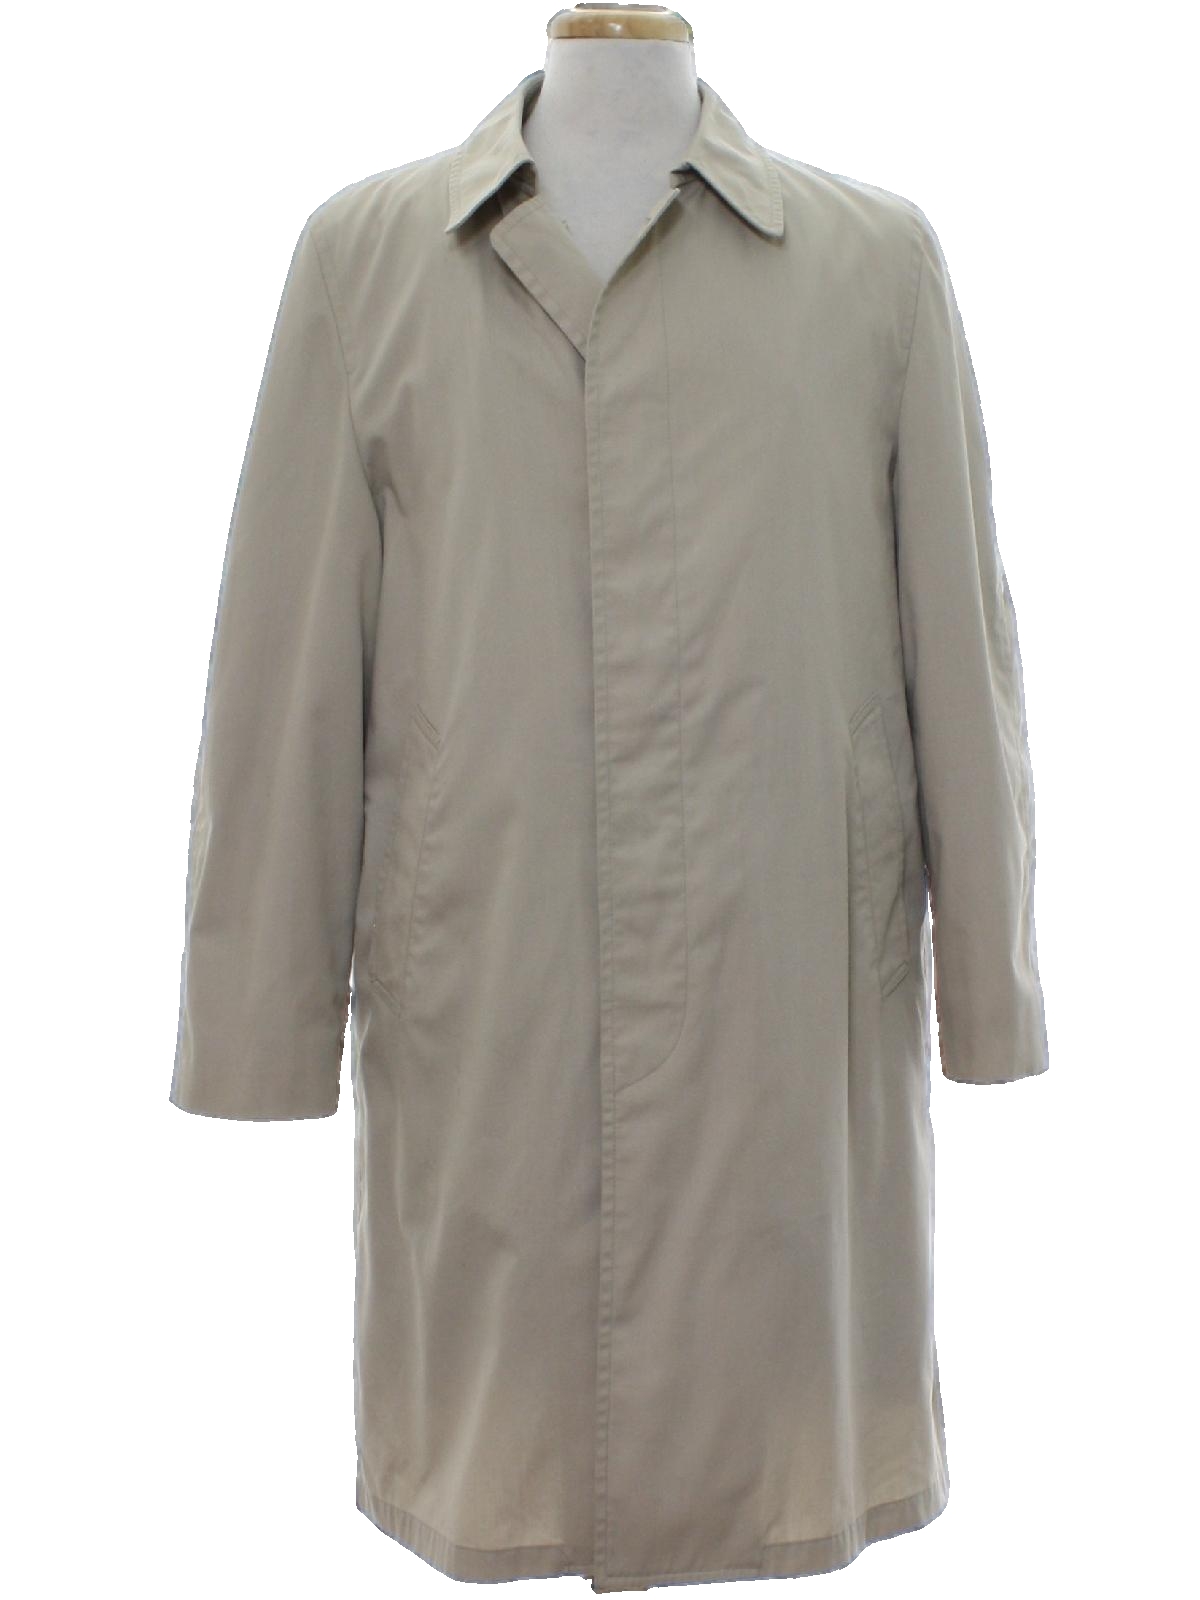 1960's Jacket (London Fog): 60s -London Fog- Mens light tan cotton ...